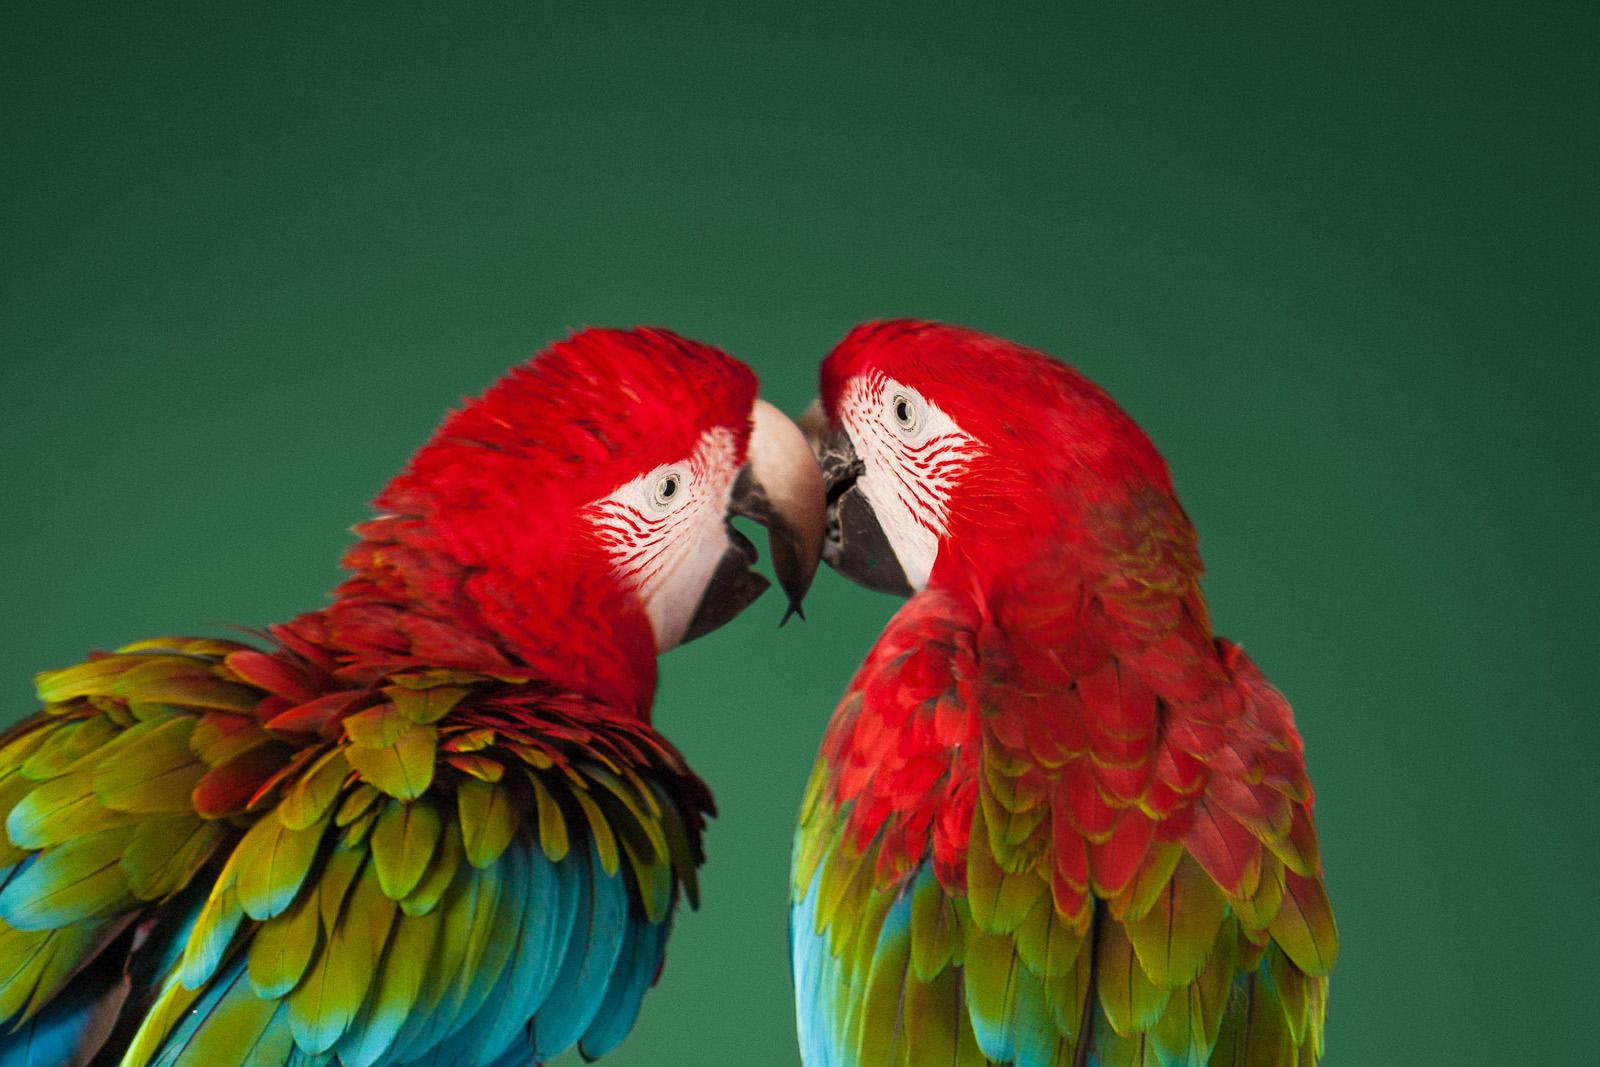 Macaw #2 – Tier signierter zeitgenössischer Vogel-Kunstdruck in limitierter Auflage, Grün – Photograph von Tim Platt